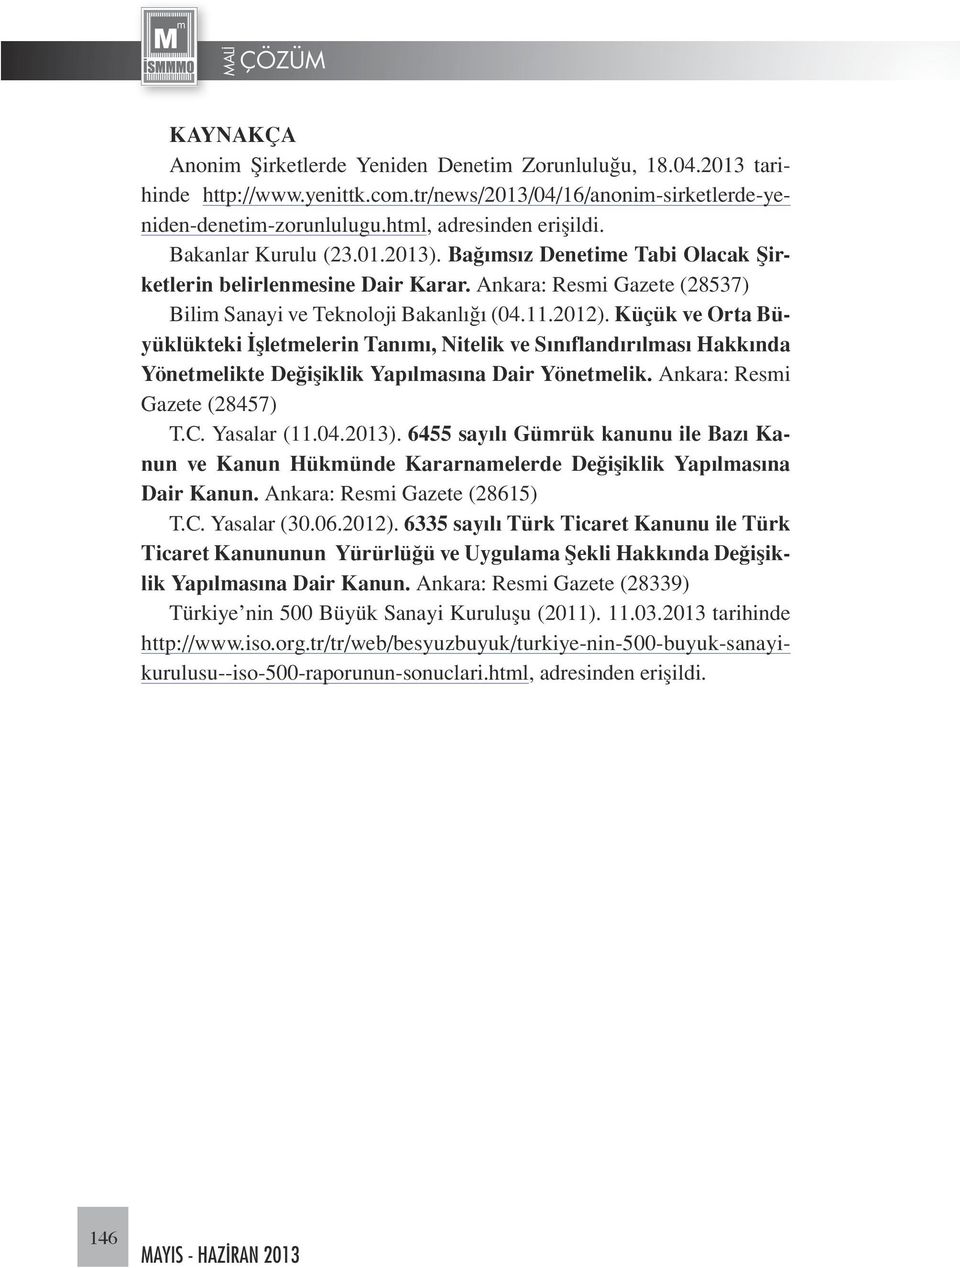 Küçük ve Orta Büyüklükteki İşletmelerin Tanımı, Nitelik ve Sınıflandırılması Hakkında Yönetmelikte Değişiklik Yapılmasına Dair Yönetmelik. Ankara: Resmi Gazete (28457) T.C. Yasalar (11.04.2013).